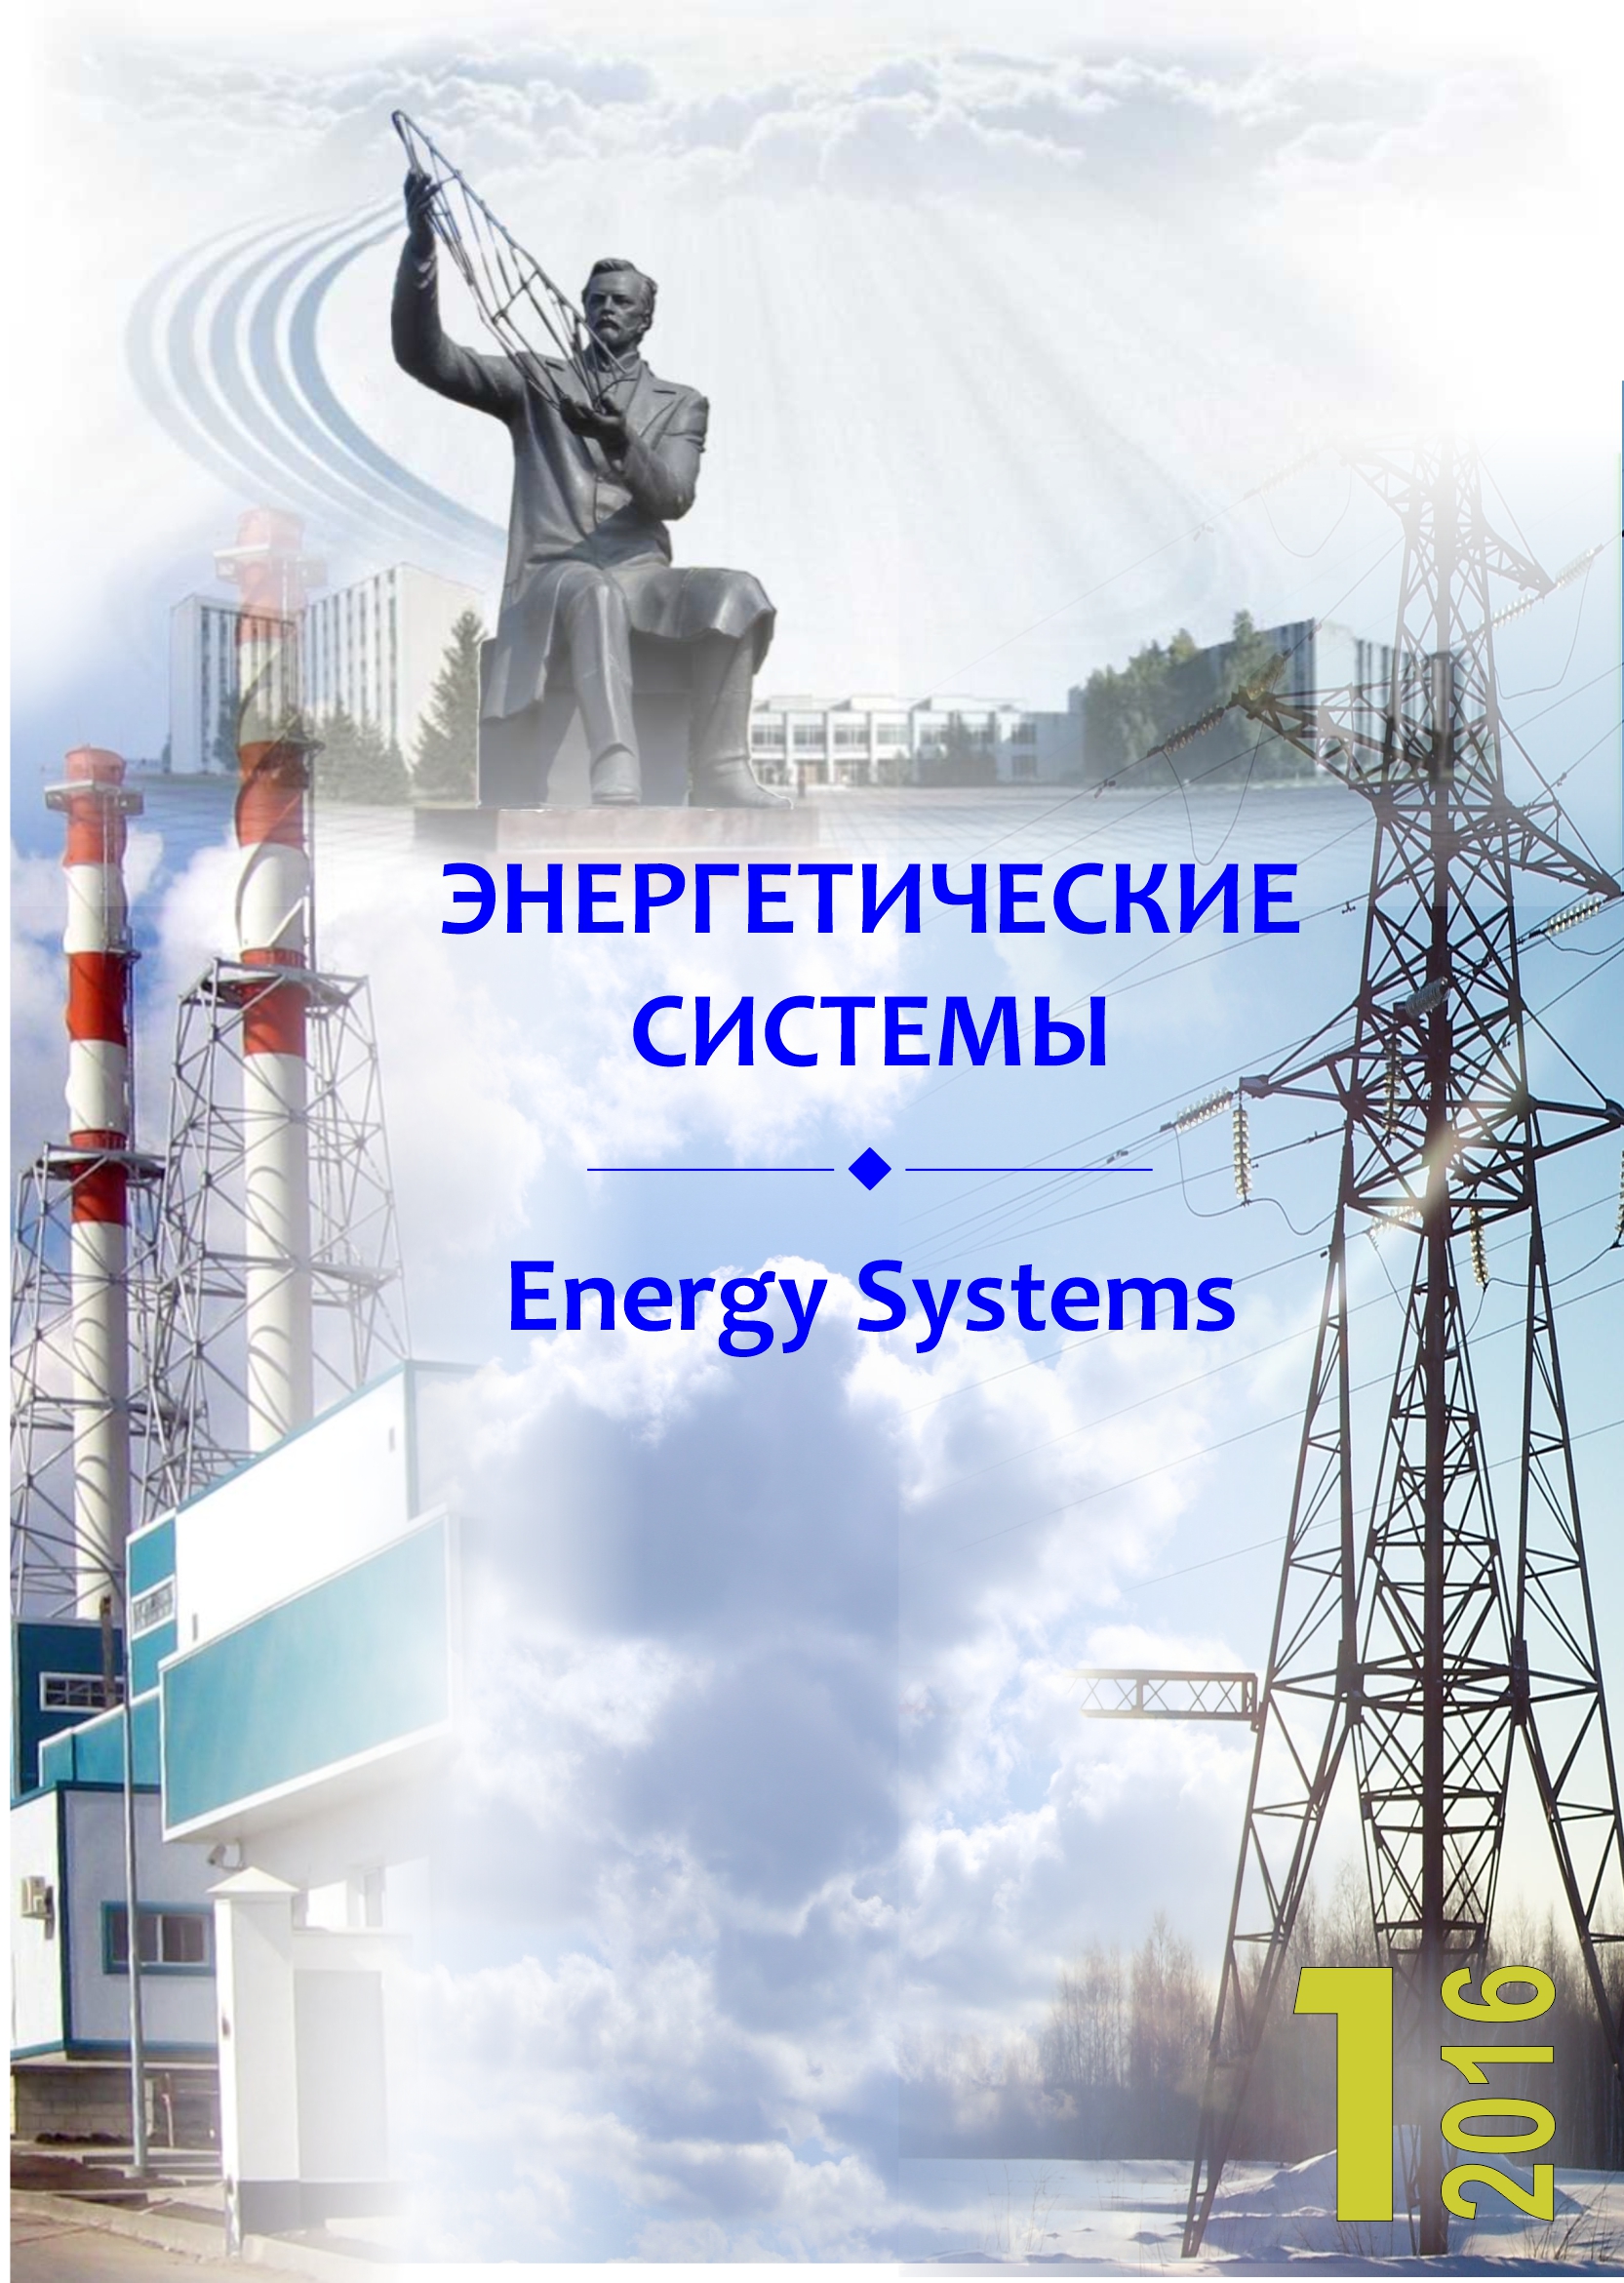 					Показать Том 1 № 1 (2016): I международная научно-техническая конференция "Энергетические, управляющие и информационные системы"
				